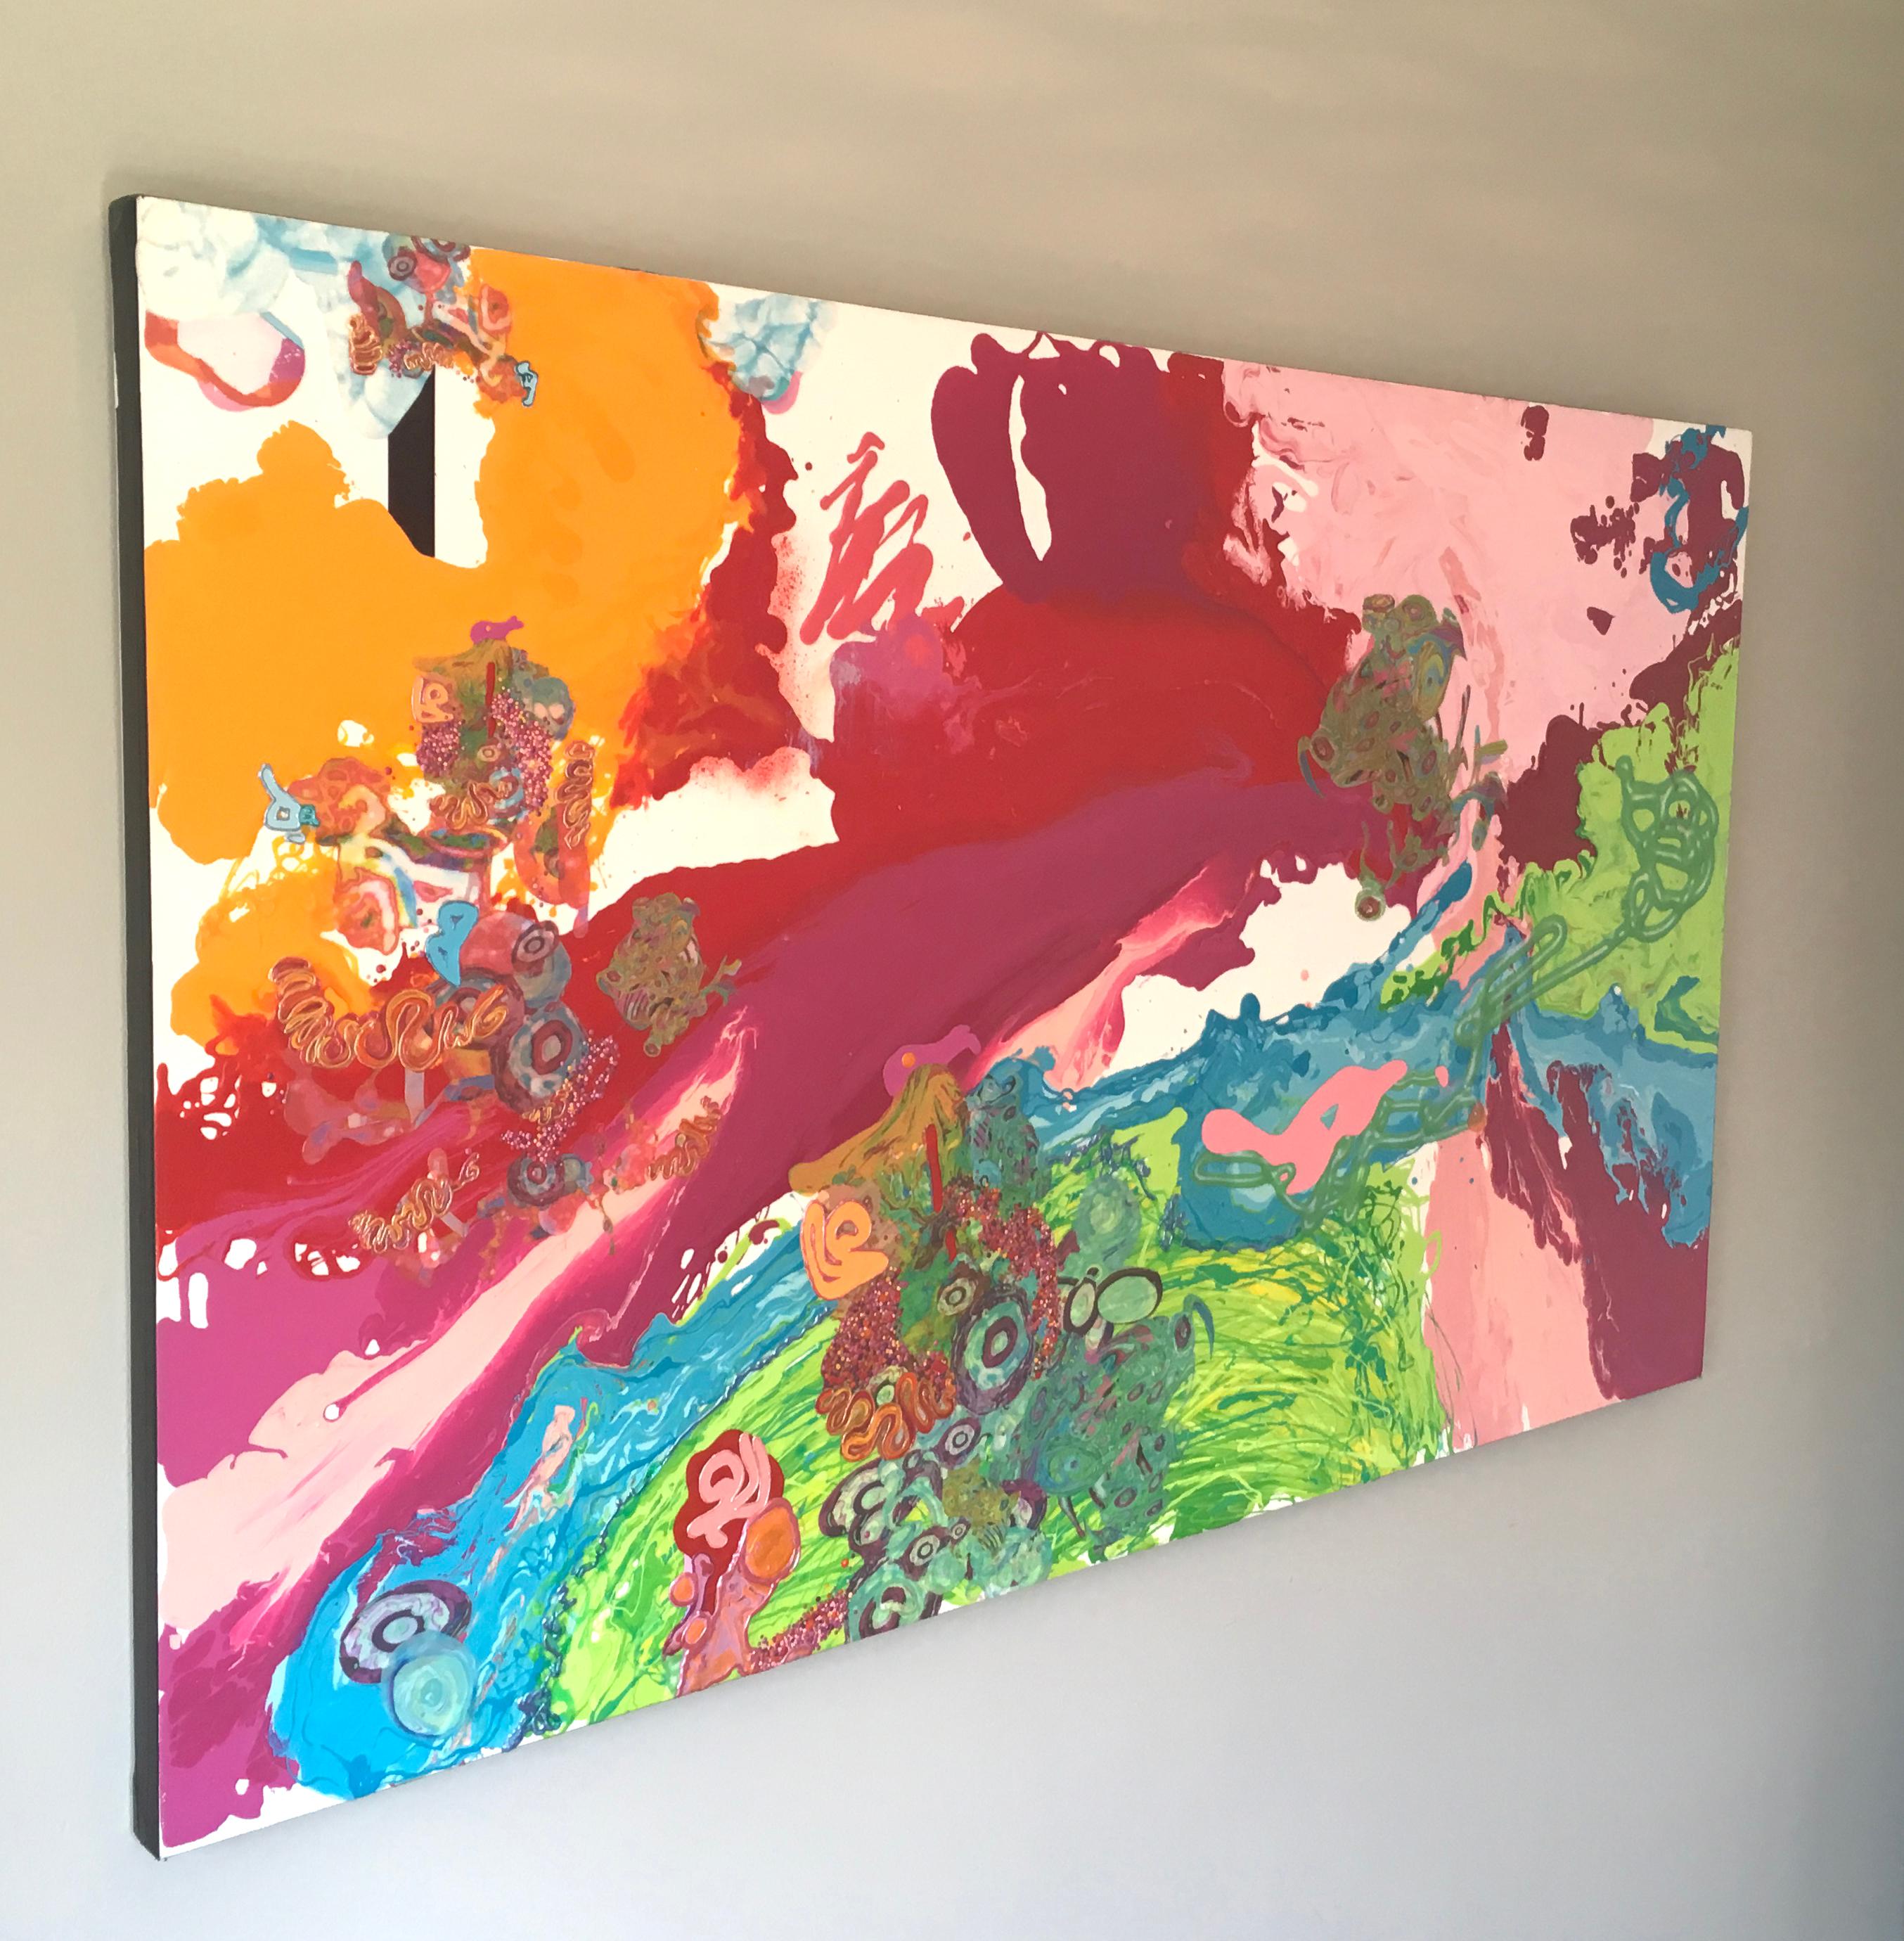 Peinture abstraite colore, technique mixte, abstraite, gomtrique, rose rose, flte - Contemporain Mixed Media Art par Kimber Berry